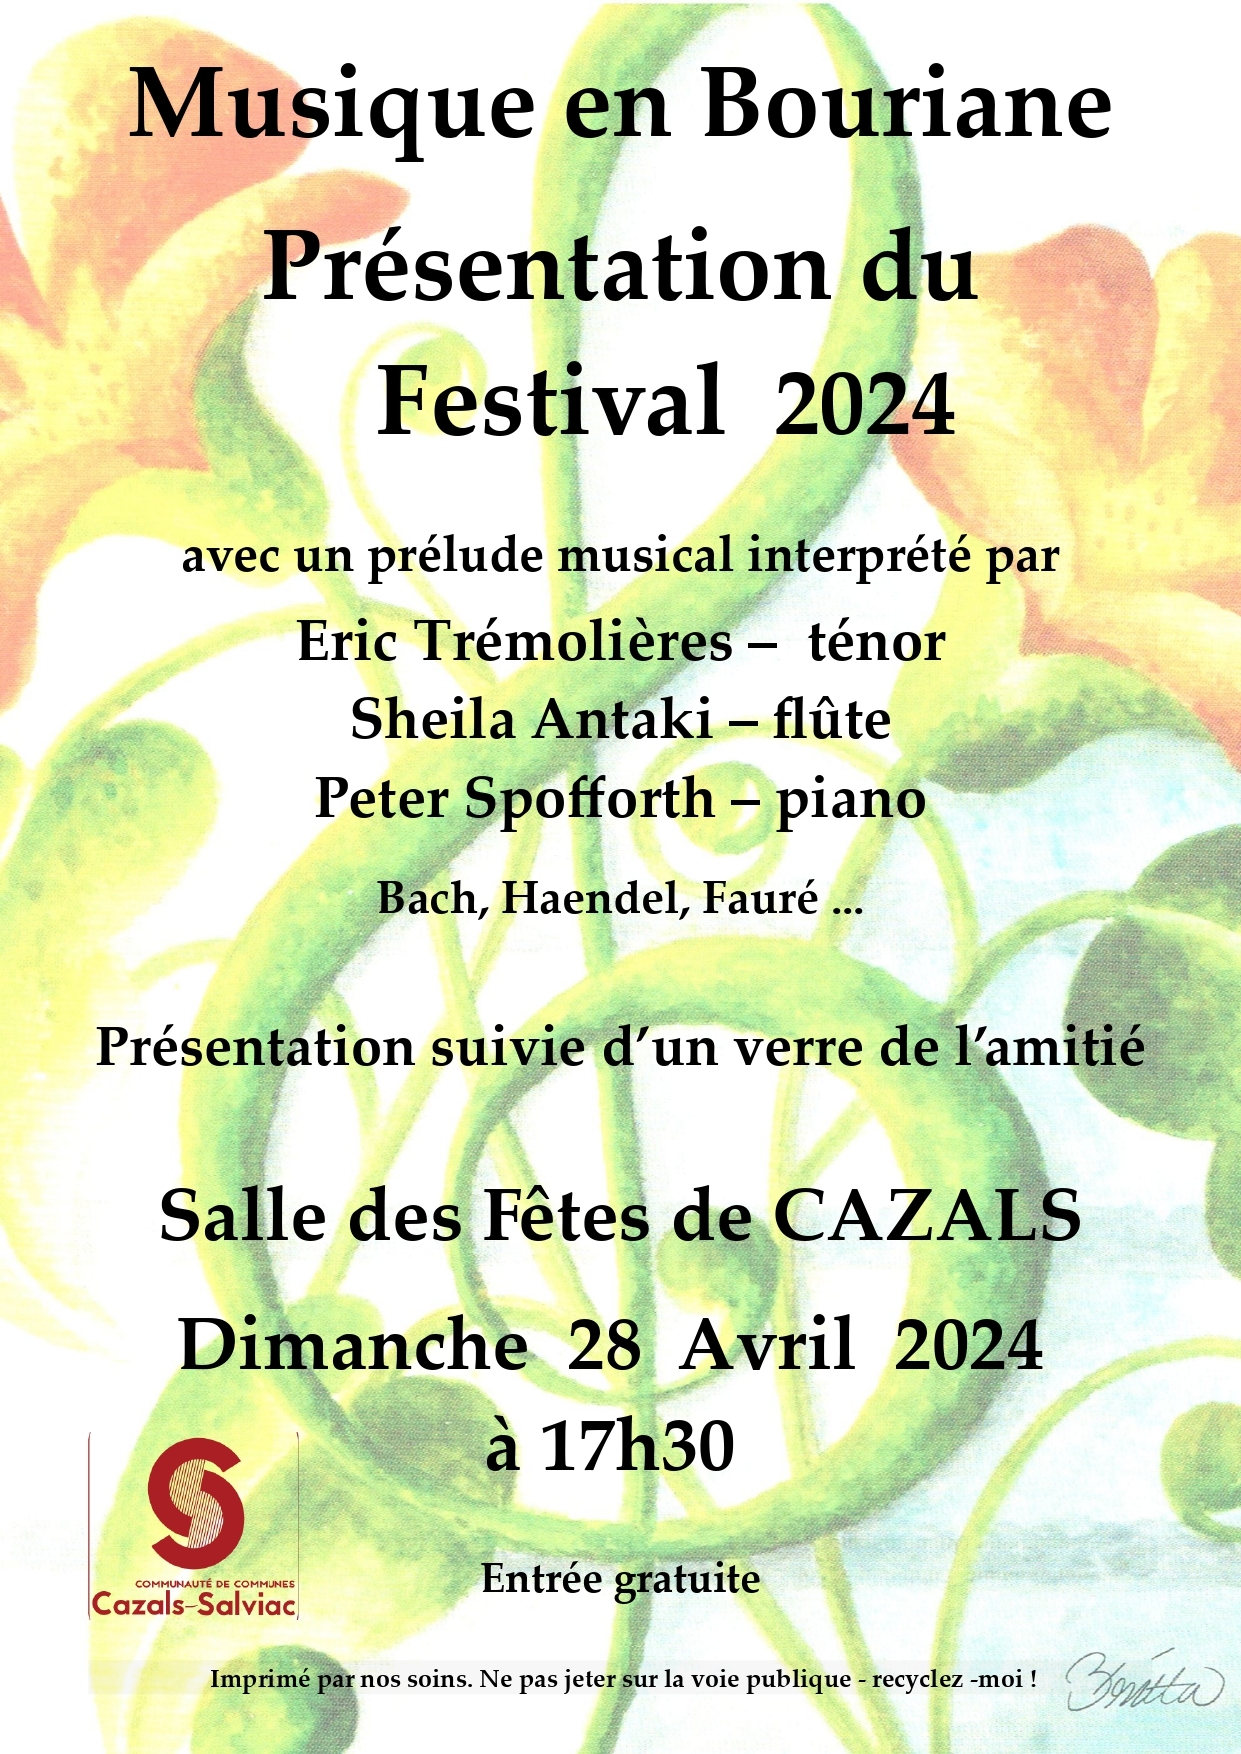 Figeac : L'Association Musique en Bouriane dévoile le Festival 2024 qui aura lieu à Cazals